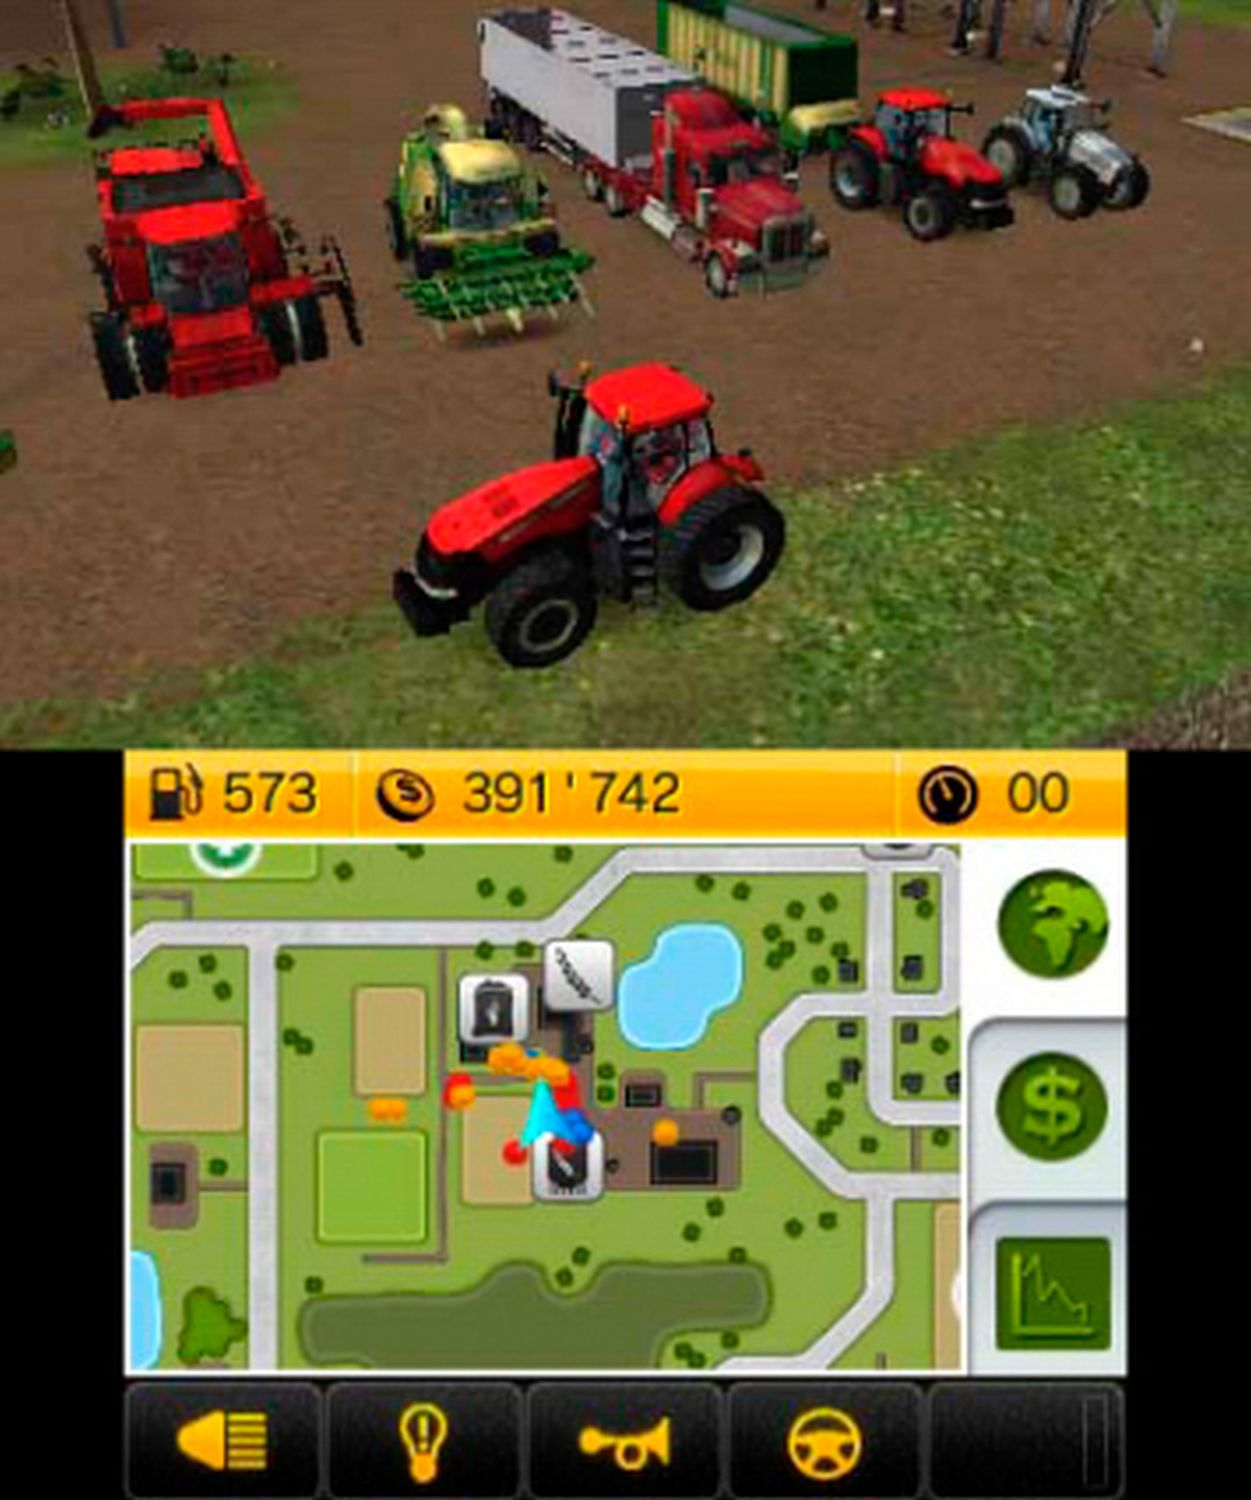 Simulator 3DS] - Landwirtschafts 14 [Nintendo